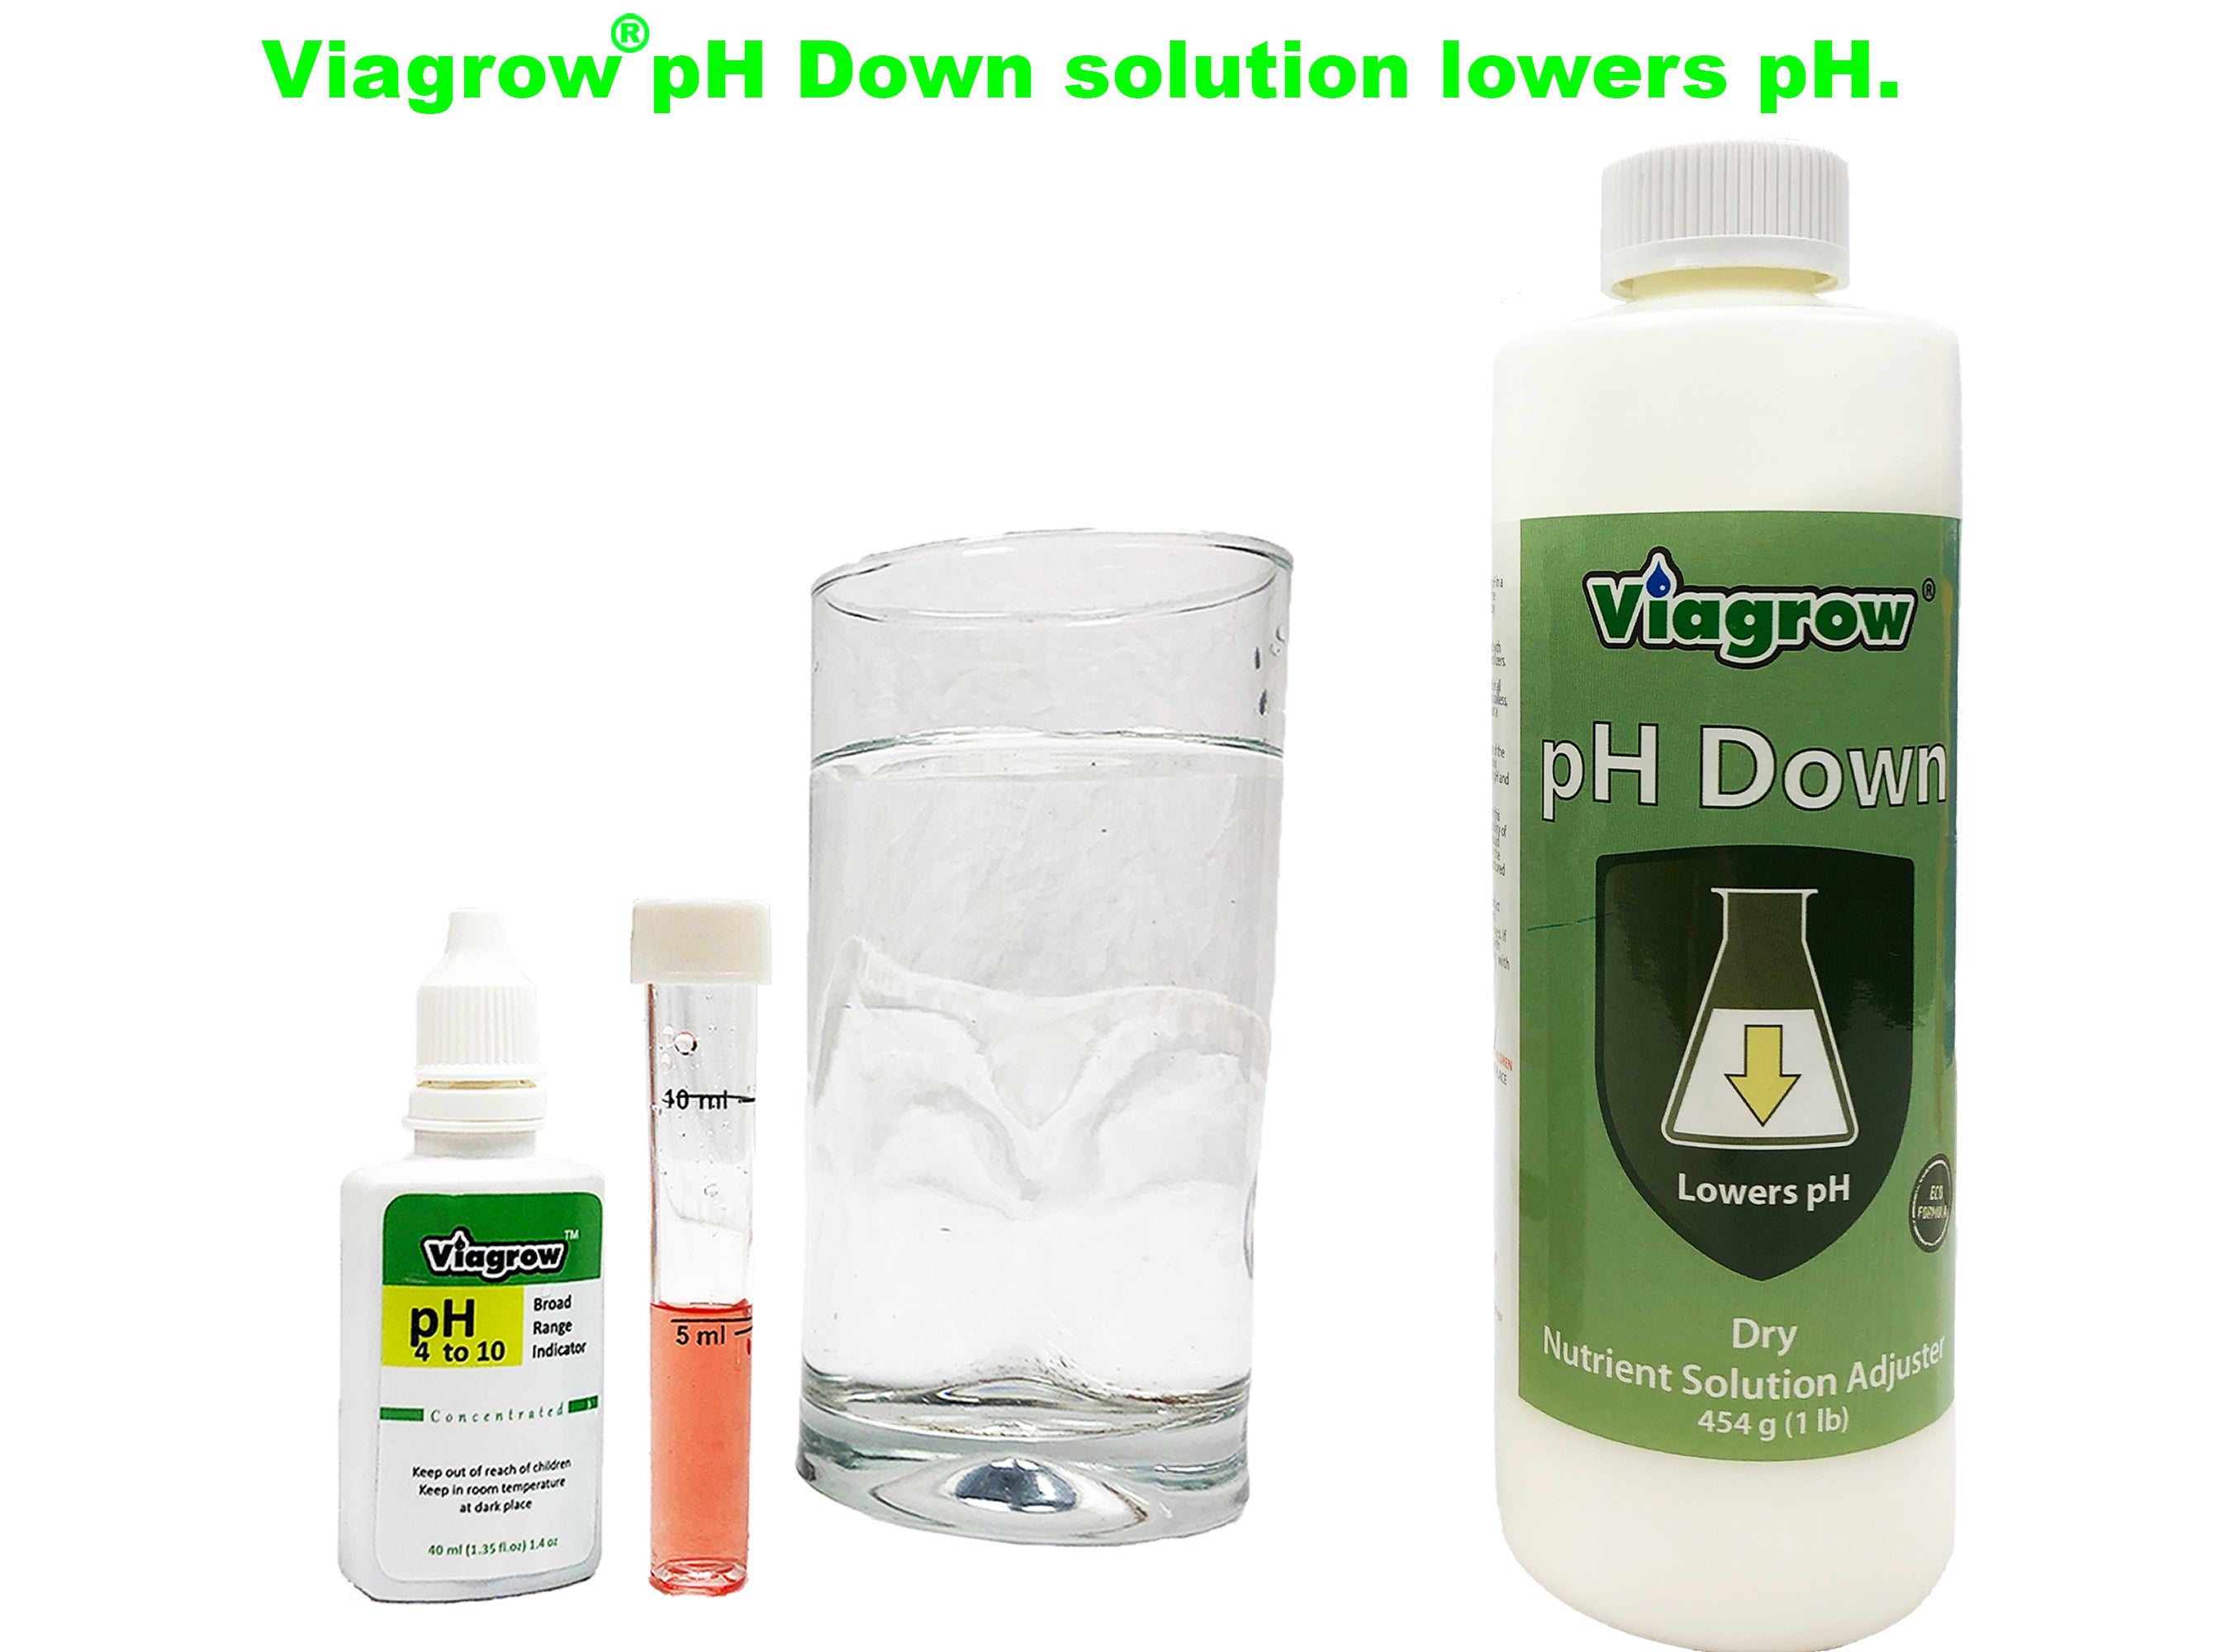 Viagrow Natural pH Down Adjusting Crystals, LB, Green